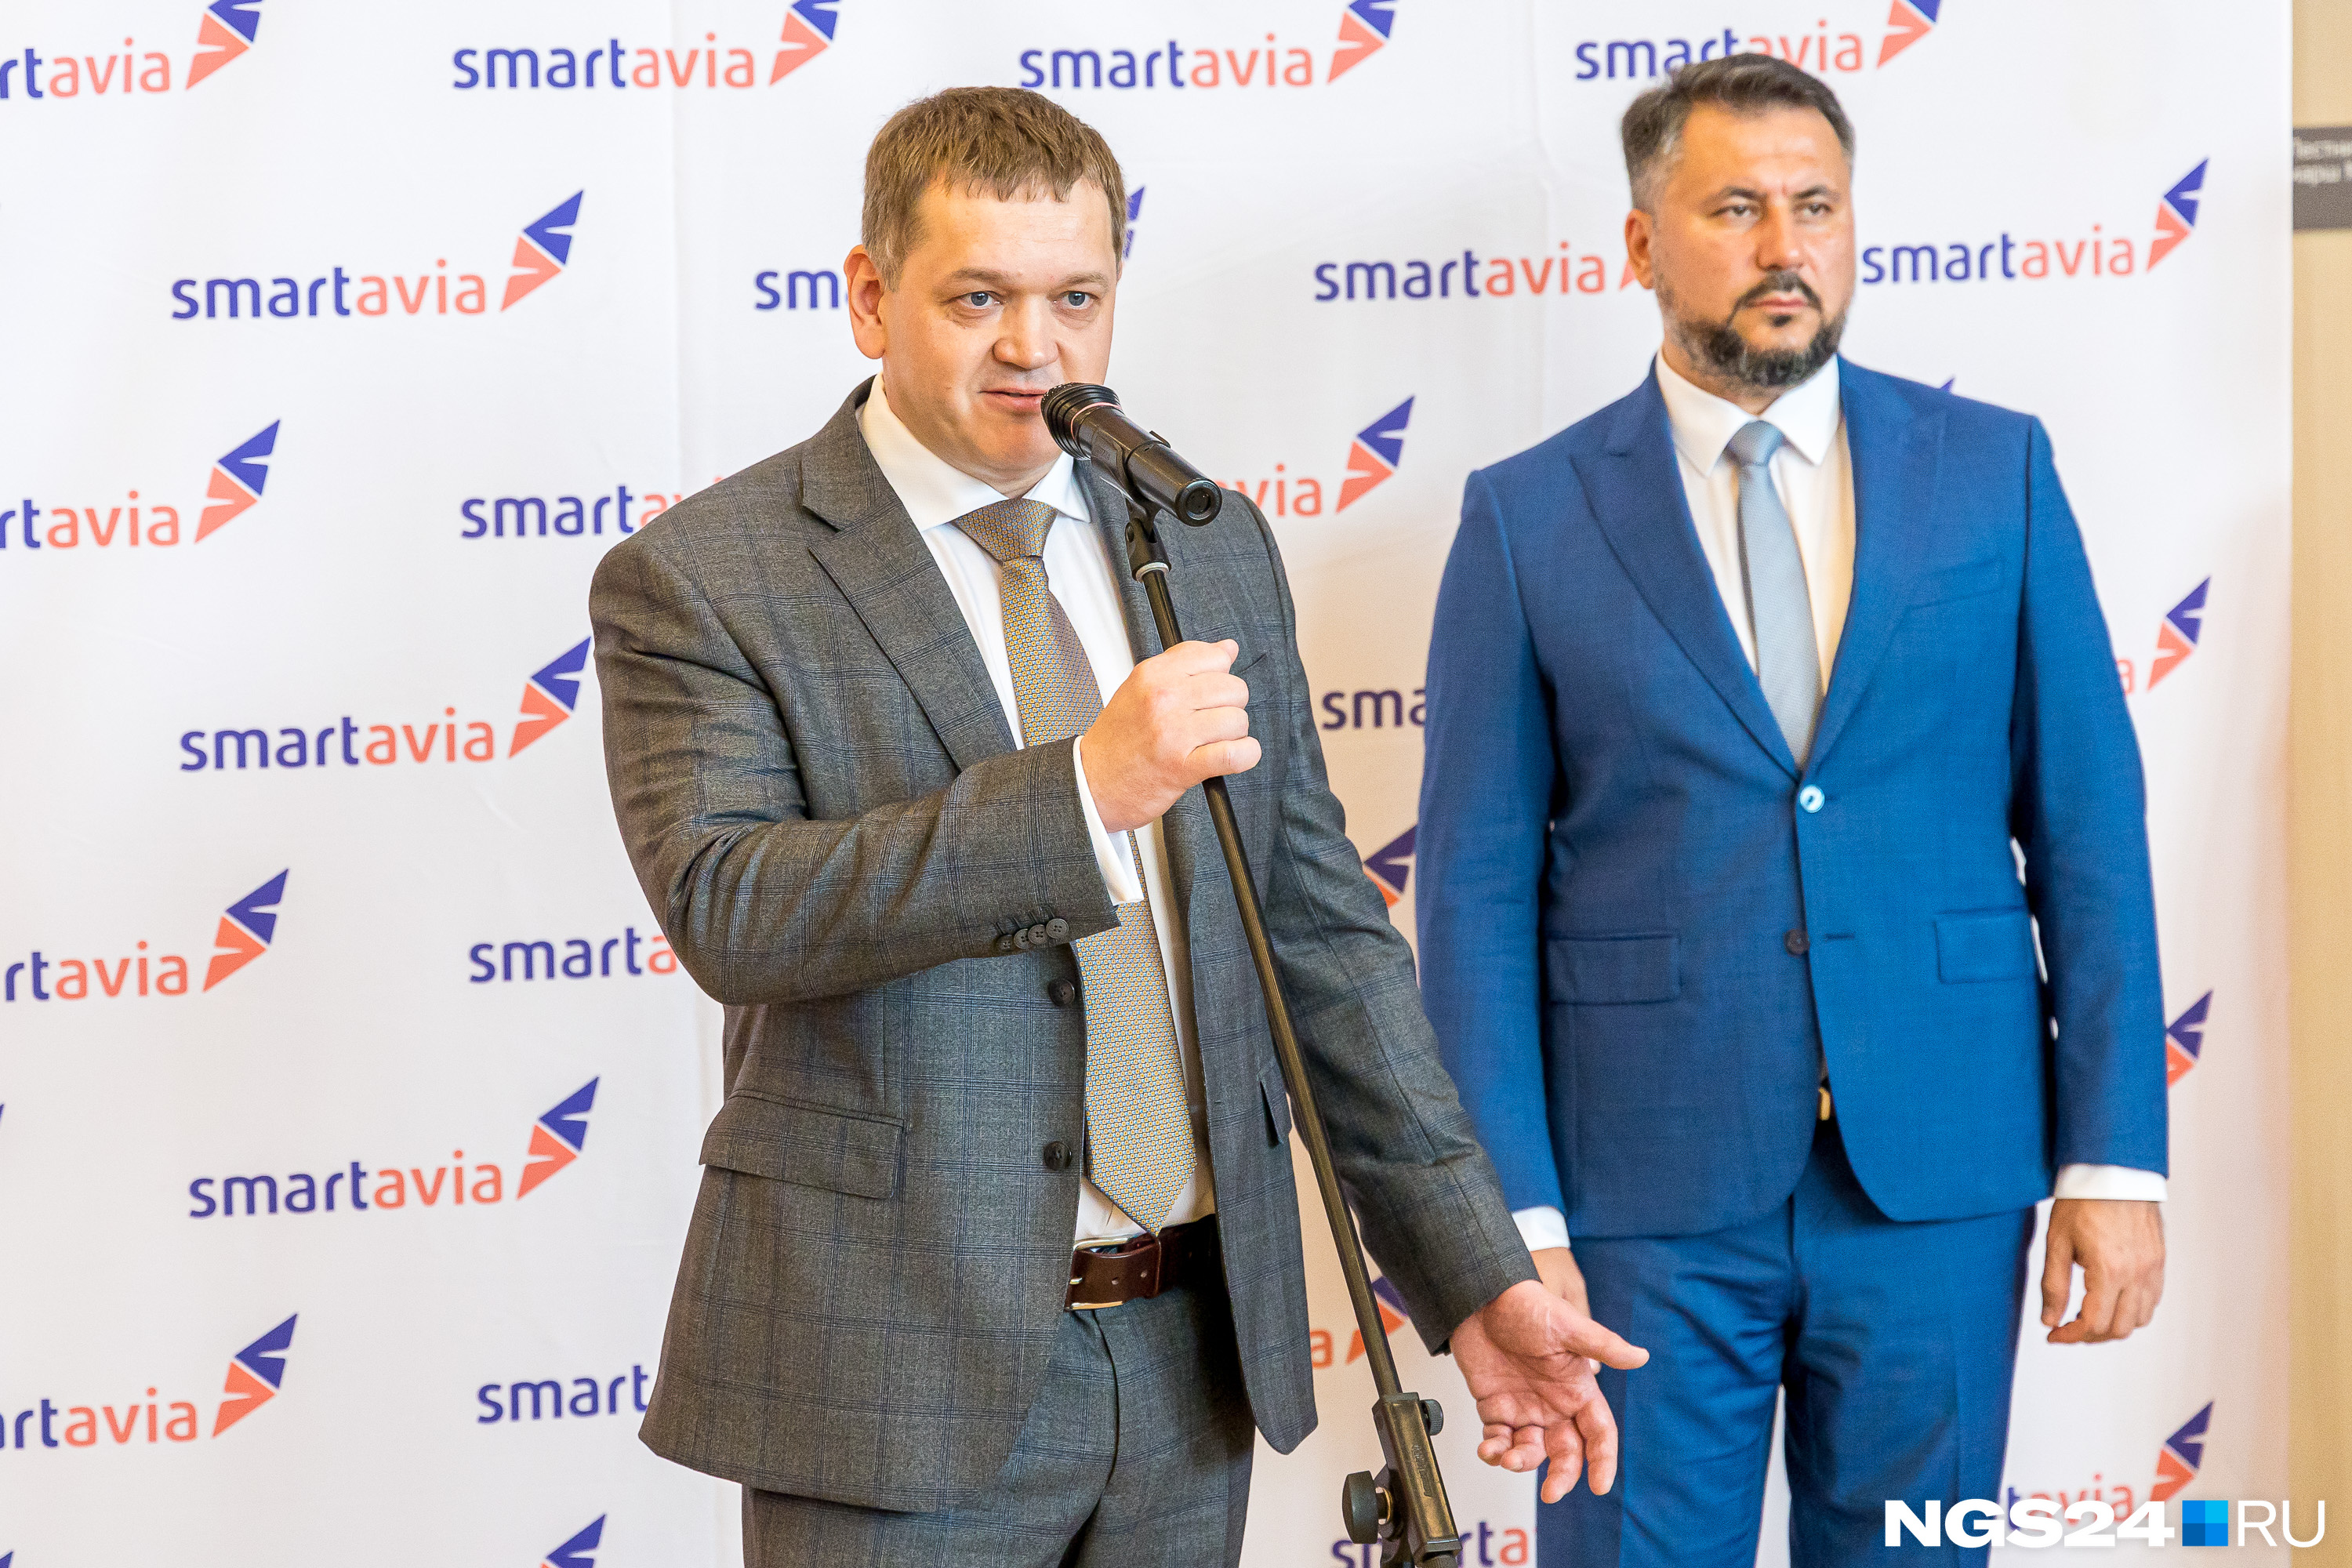 Заместитель генерального директора авиакомпании Smartavia Денис Померанцев (слева) и директор аэропорта Красноярск Андрей Метцлер